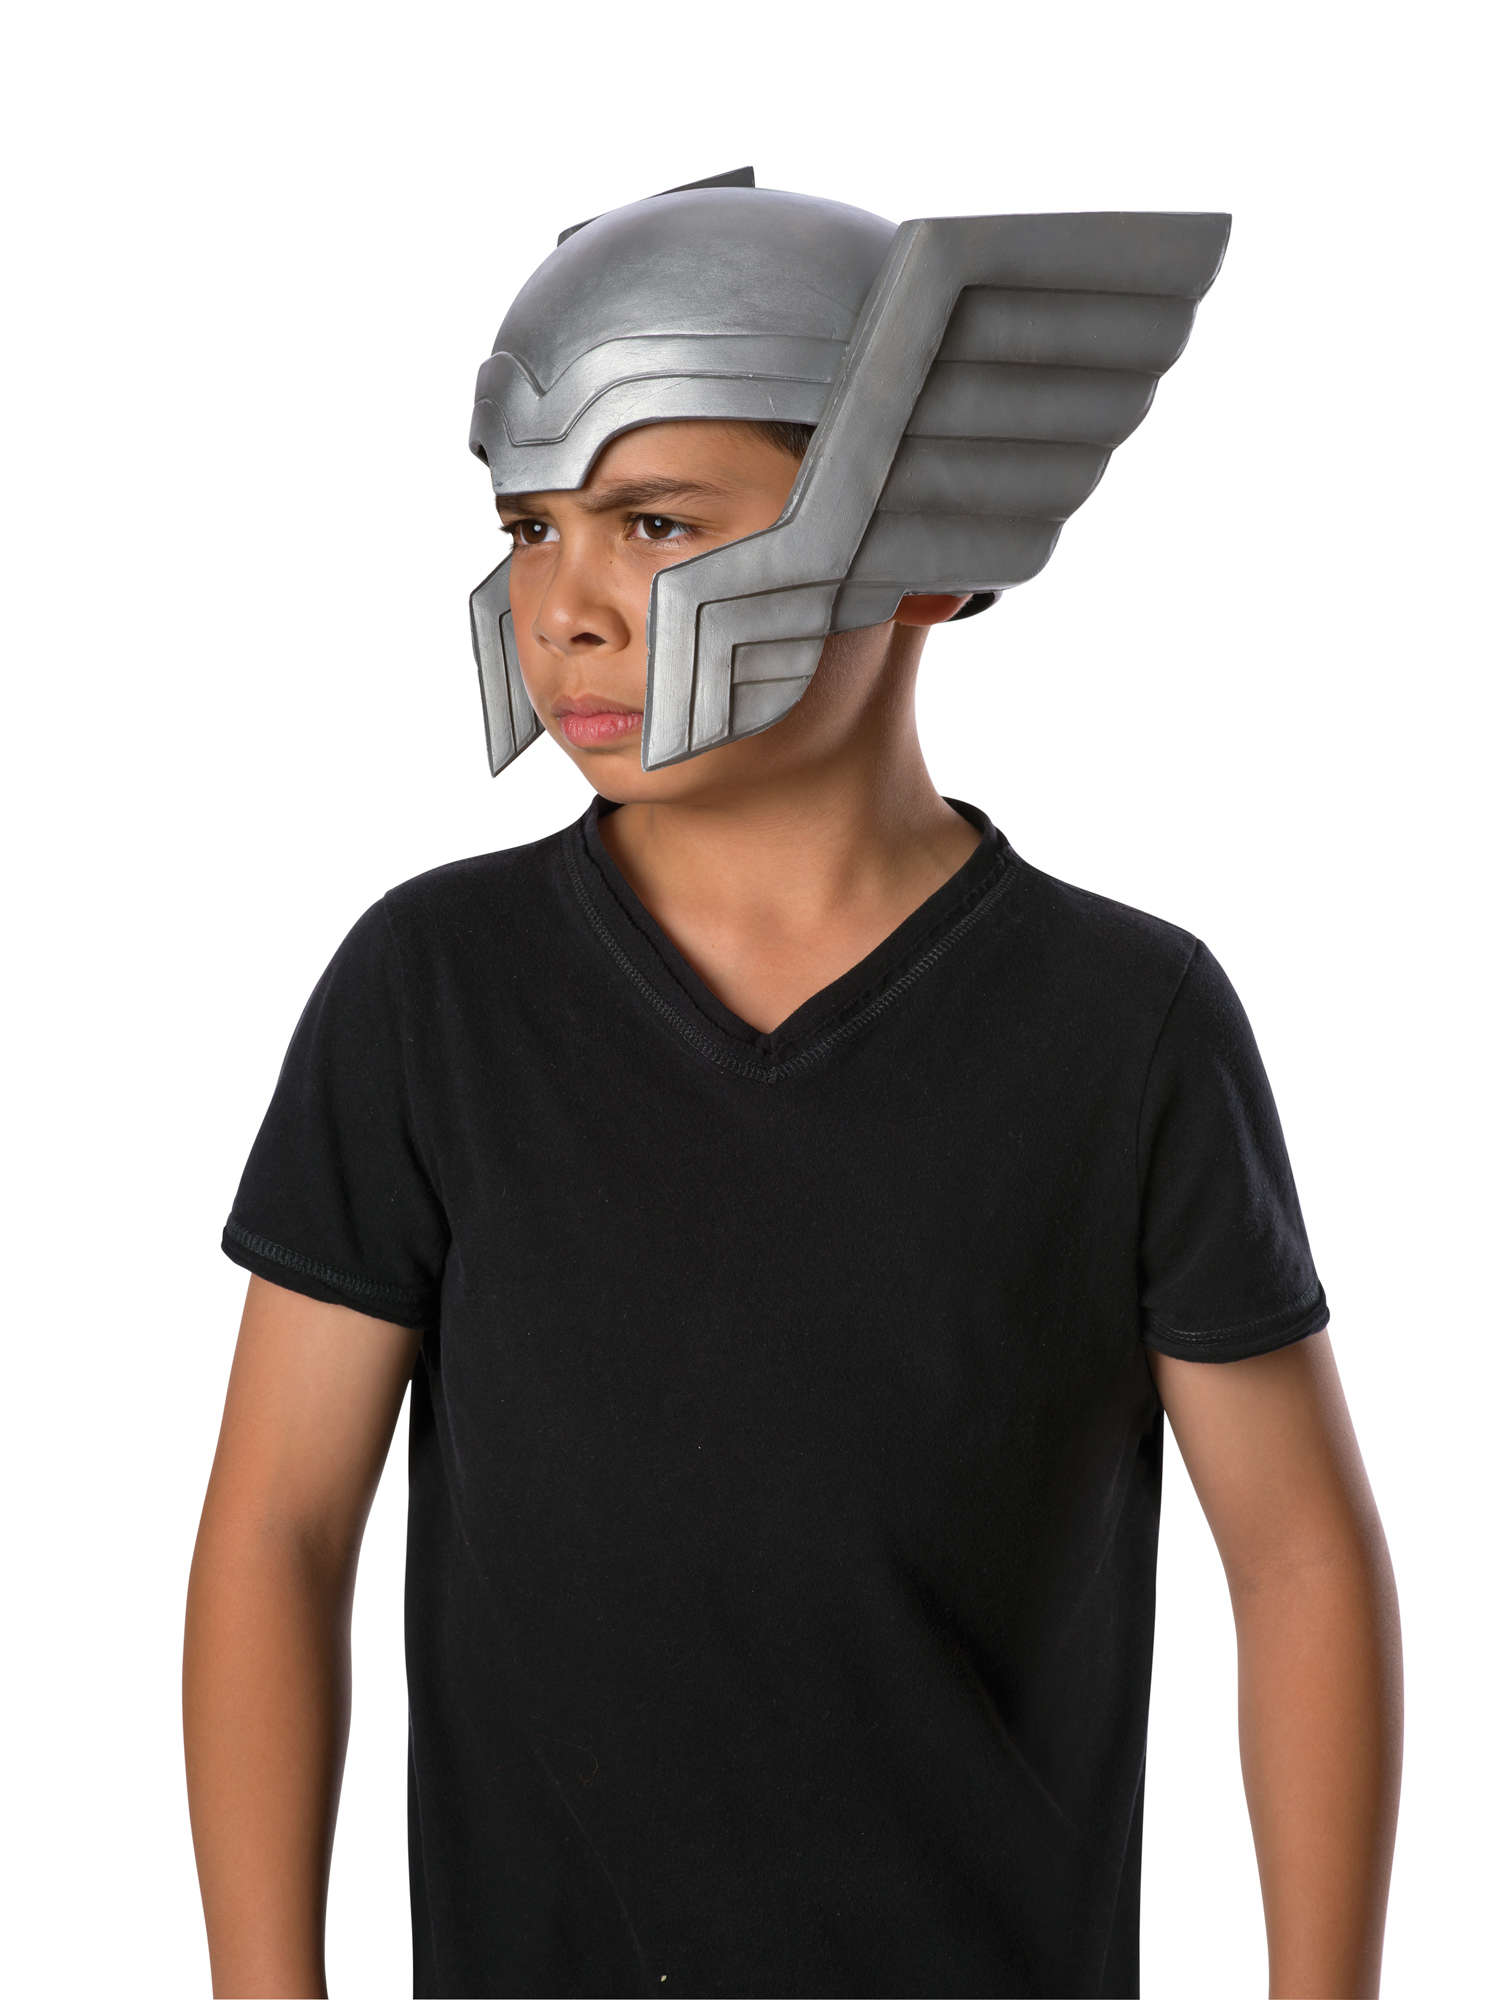 Helm Avenger Thor voor Kind US-design